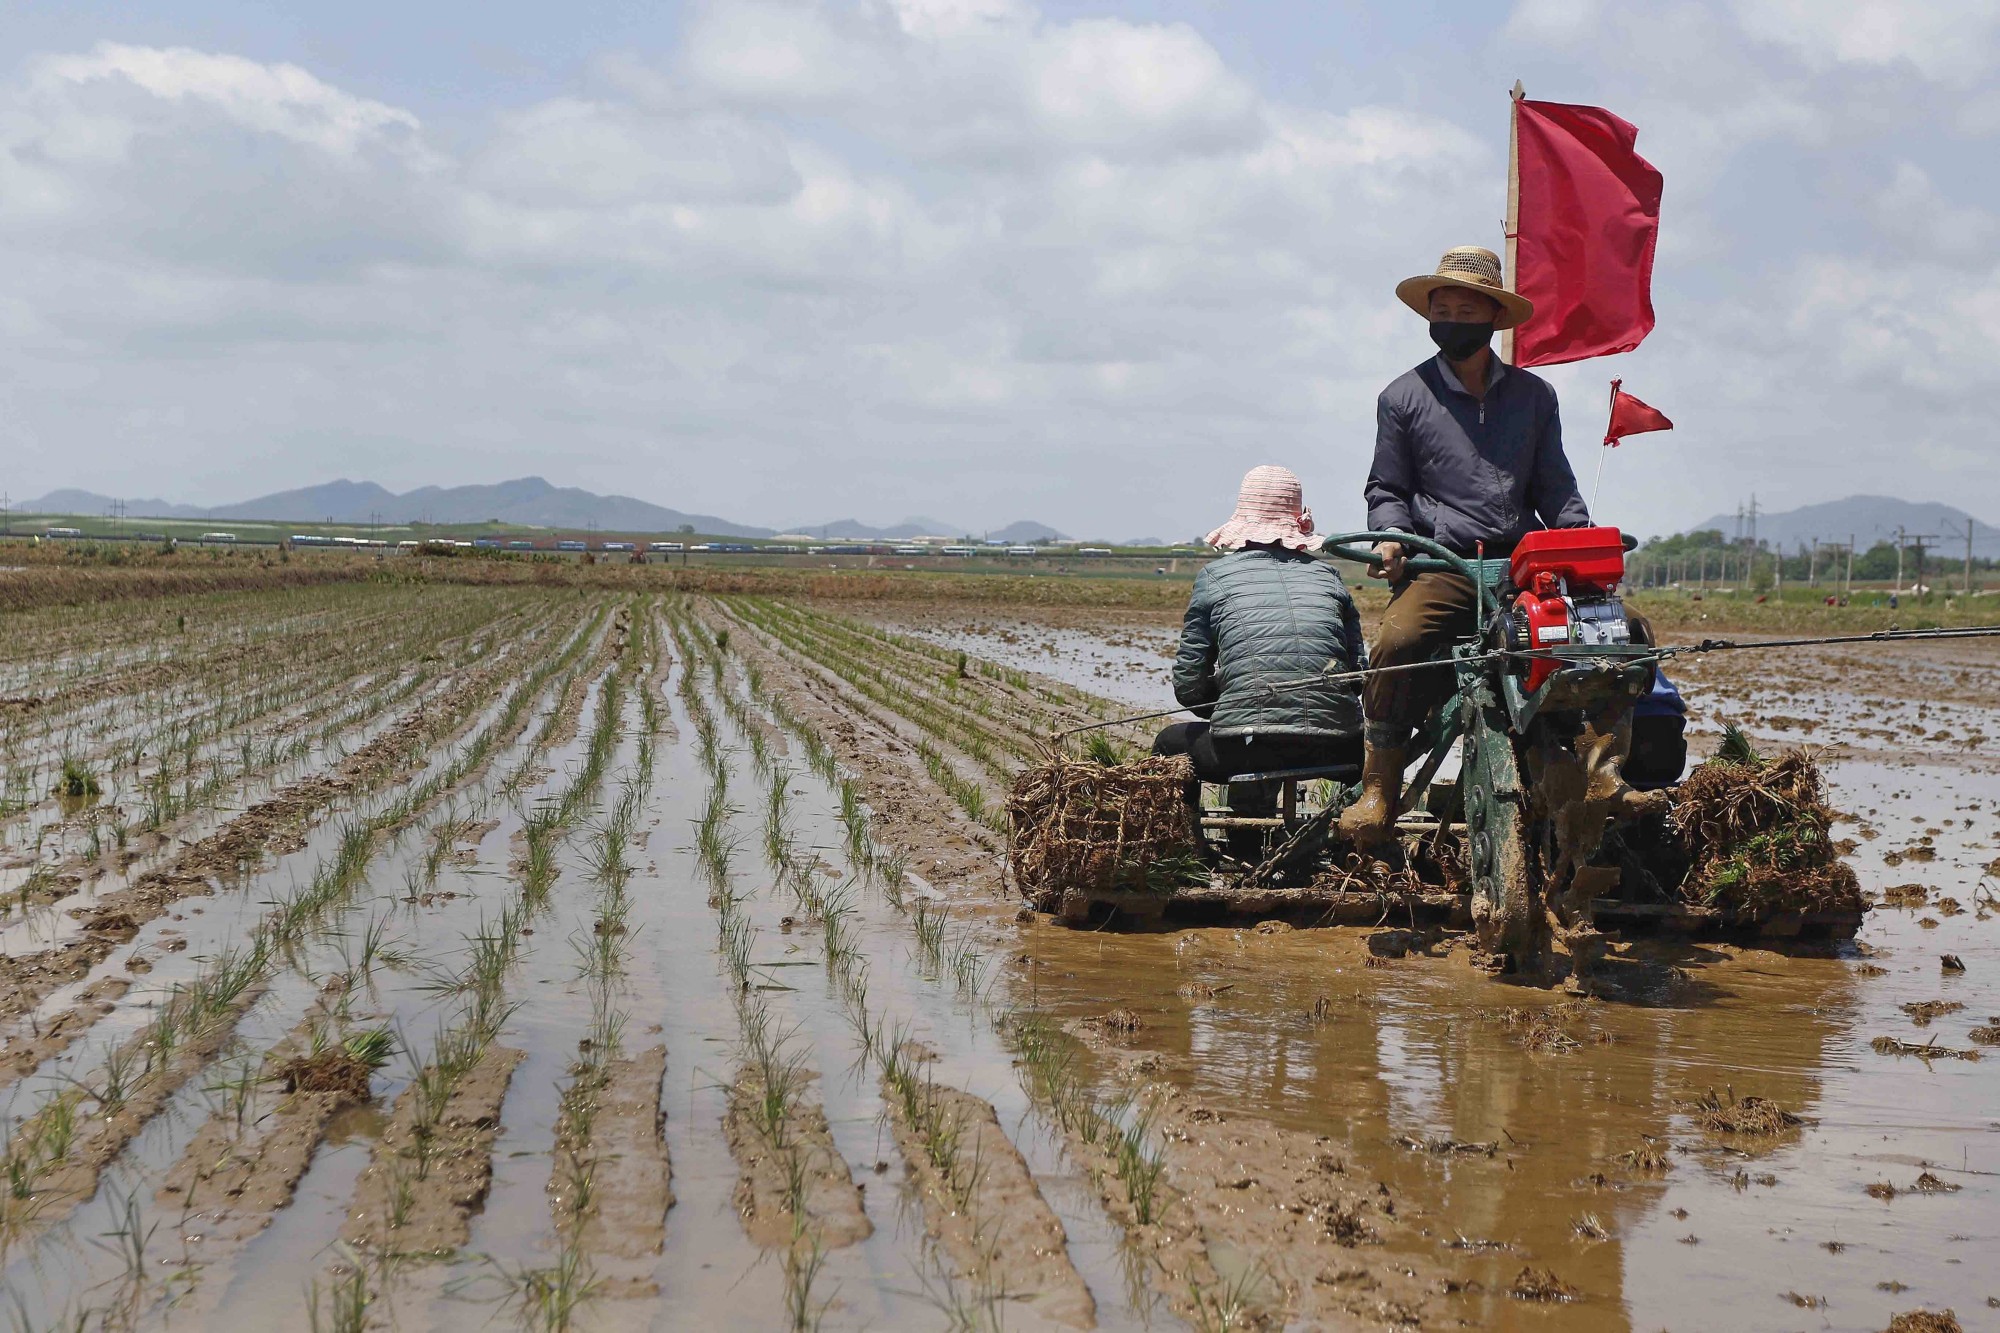 خبرگزاری کره شمالی: کودکان یتیم داوطلب کار در مزارع و معادن